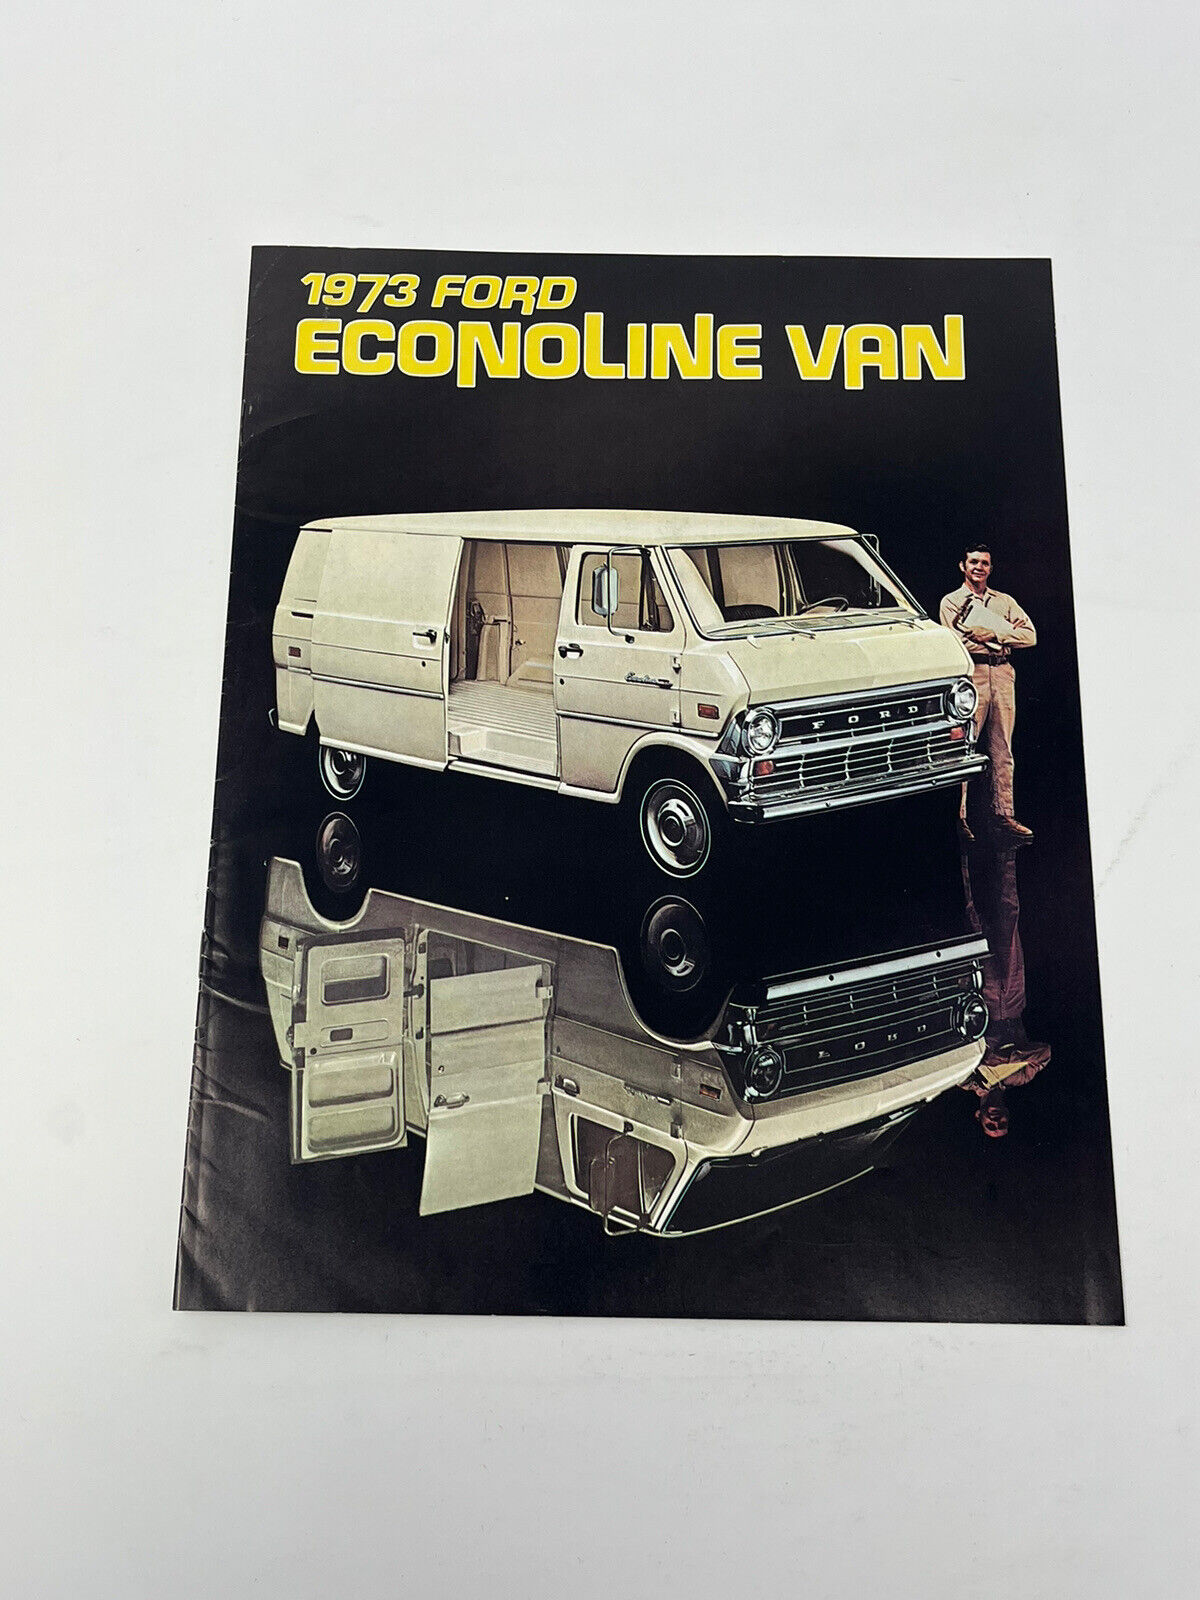 1973 Ford Econoline Vintage Car Van Truck Original Sales Brochure Good Condition